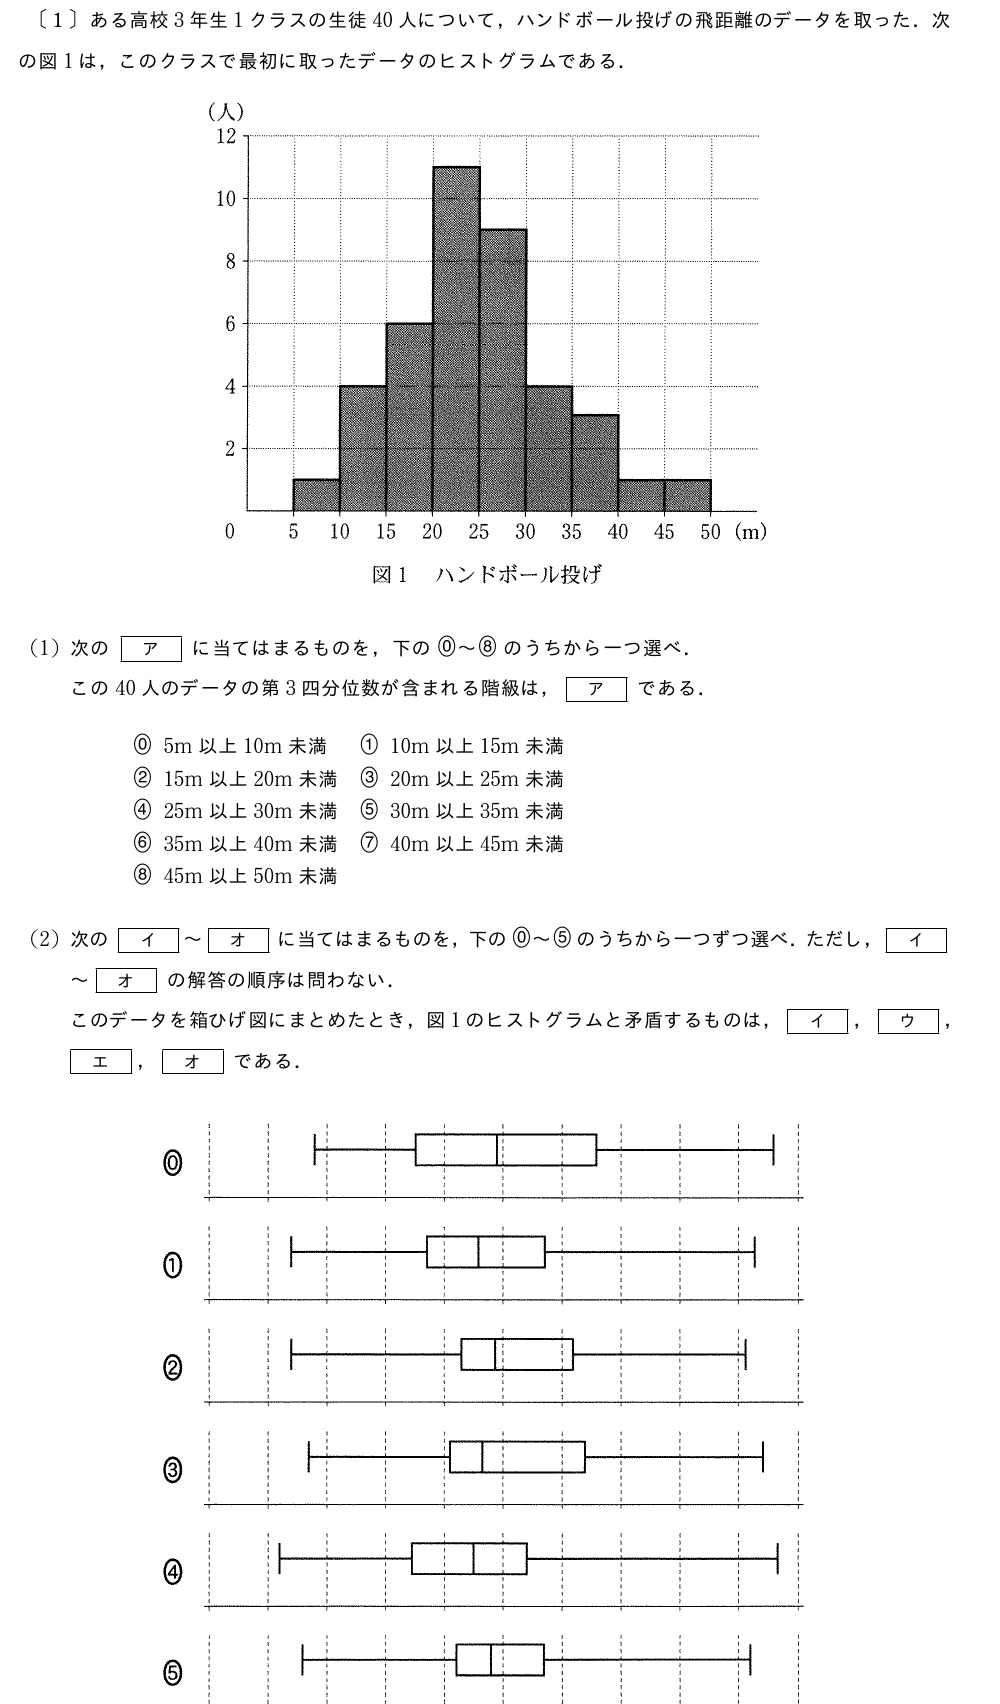 \kagiichiある高校3年生1クラスの生徒40人について，ハンドボール投げの飛距離のデータを取った．次の図1は，このクラスで最初に取ったデータのヒストグラムである．（プレビューでは図は省略します）(1)次の[ア]に当てはまるものを，下の\nagamarurei～\nagamaruhachiのうちから一つ選べ．この40人のデータの第3四分位数が含まれる階級は，[ア]である．\begin{array}{ll}\nagamarurei5m　以上　10m　未満　&\nagamaruichi10m　以上　15m　未満　\\nagamaruni15m　以上　20m　未満　&\nagamarusan20m　以上　25m　未満　\\nagamarushi25m　以上　30m　未満　&\nagamarugo30m　以上　35m　未満　\\nagamaruroku35m　以上　40m　未満　&\nagamarushichi40m　以上　45m　未満　\\nagamaruhachi45m　以上　50m　未満　&\end{array}(2)次の[イ]～[オ]に当てはまるものを，下の\nagamarurei～\nagamarugoのうちから一つずつ選べ．ただし，[イ]～[オ]の解答の順序は問わない．このデータを箱ひげ図にまとめたとき，図1のヒストグラムと{\bf矛盾するもの}は，[イ]，[ウ]，[エ]，[オ]である．（プレビューでは図は省略します）(3)次の文章中の[カ]，[キ]に入れるものとして最も適当なものを，下の\nagamarurei～\nagamarusanのうちから一つずつ選べ．ただし，[カ]，[キ]の解答の順序は問わない．後日，このクラスでハンドボール投げの記録を取り直した．次に示したA～Dは，最初に取った記録から今回の記録への変化の分析結果を記述したものである．a～dの各々が今回取り直したデータの箱ひげ図となる場合に，\nagamarurei～\nagamarusanの組合せのうち分析結果と箱ひげ図が{\bf矛盾するもの}は，[カ]，[キ]である．\nagamarureiA-a\qquad\nagamaruichiB-b\qquad\nagamaruniC-c\qquad\nagamarushiD-d\mon[A:]どの生徒の記録も下がった．\mon[B:]どの生徒の記録も伸びた．\mon[C:]最初に取ったデータで上位1/3に入るすべての生徒の記録が伸びた．\mon[D:]最初に取ったデータで上位1/3に入るすべての生徒の記録は伸び，下位1/3に入るすべての生徒の記録は下がった．（プレビューでは図は省略します）\mon[\kagini]ある高校2年生40人のクラスで一人2回ずつハンドボール投げの飛距離のデータを取ることにした．次の図2は，1回目のデータを横軸に，2回目のデータを縦軸にとった散布図である．なお，一人の生徒が欠席したため，39人のデータとなっている．（プレビューでは図は省略します）（共分散とは1回目のデータの偏差と2回目のデータの偏差の積の平均である）次の[ク]に当てはまるものを，下の\nagamarurei～\nagamarukyuのうちから一つ選べ．1回目のデータと2回目のデータの相関係数に最も近い値は，[ク]である．\begin{array}{lllllllll}\nagamarurei0.67&&\nagamaruichi0.71&&\nagamaruni0.75&&\nagamarusan0.79&&\nagamarushi0.83\\nagamarugo0.87&&\nagamaruroku0.91&&\nagamarushichi0.95&&\nagamaruhachi0.99&&\nagamarukyu1.03\\end{array}